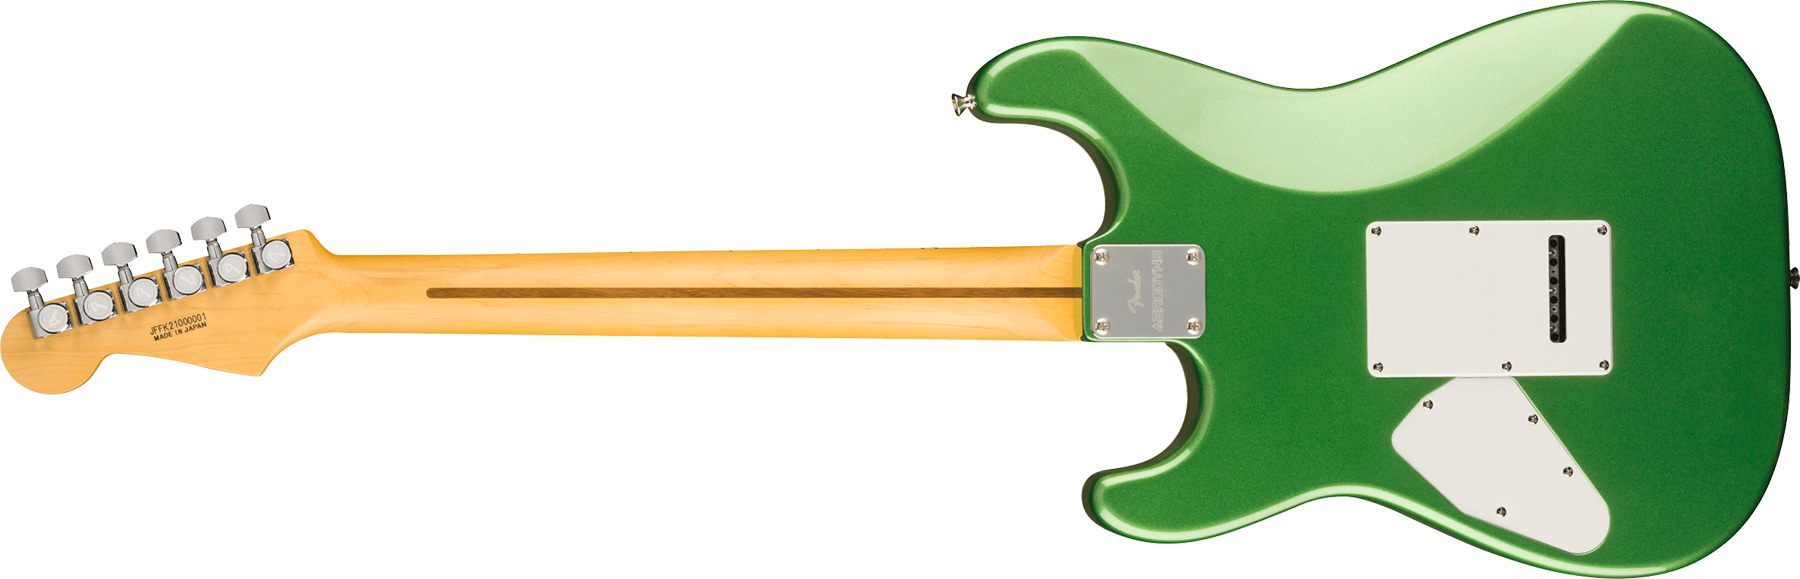 Fender Strat Aerodyne Special Jap Trem Hss Mn - Speed Green Metallic - Elektrische gitaar in Str-vorm - Variation 1